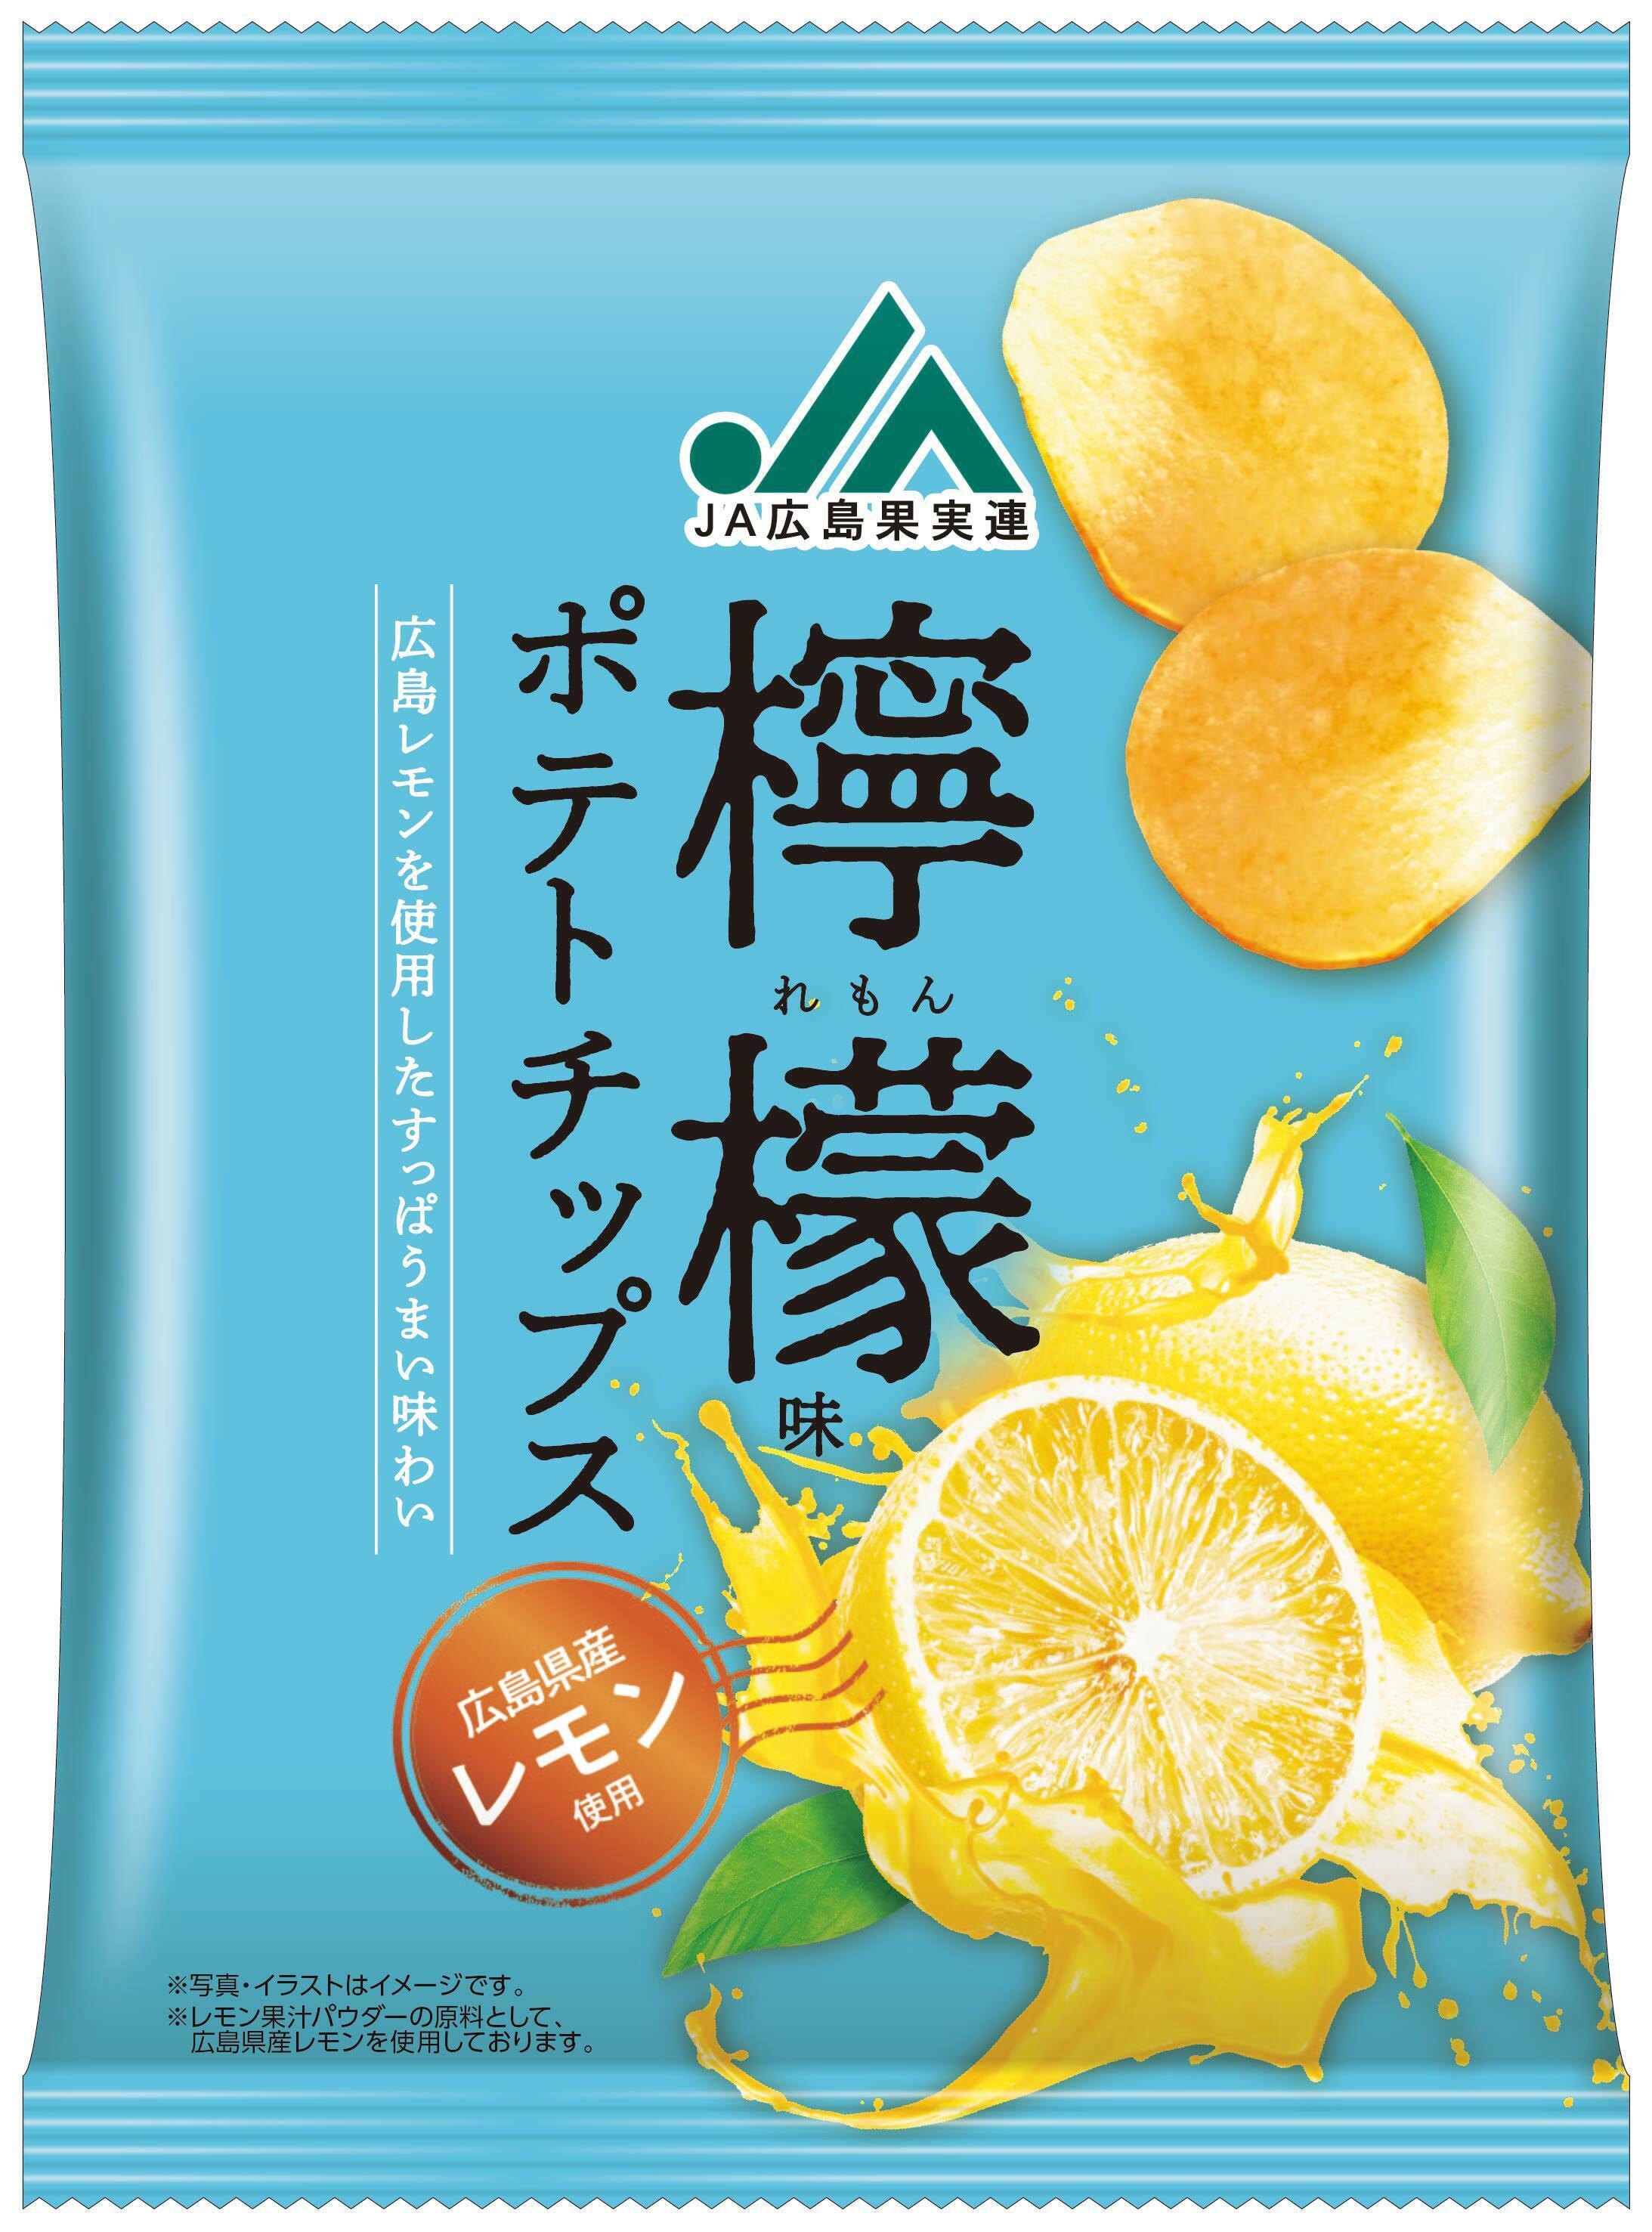 広島県産レモンを使用したすっぱうまい味わい
「JA広島果実連檸檬味ポテトチップス」をリニューアル発売！